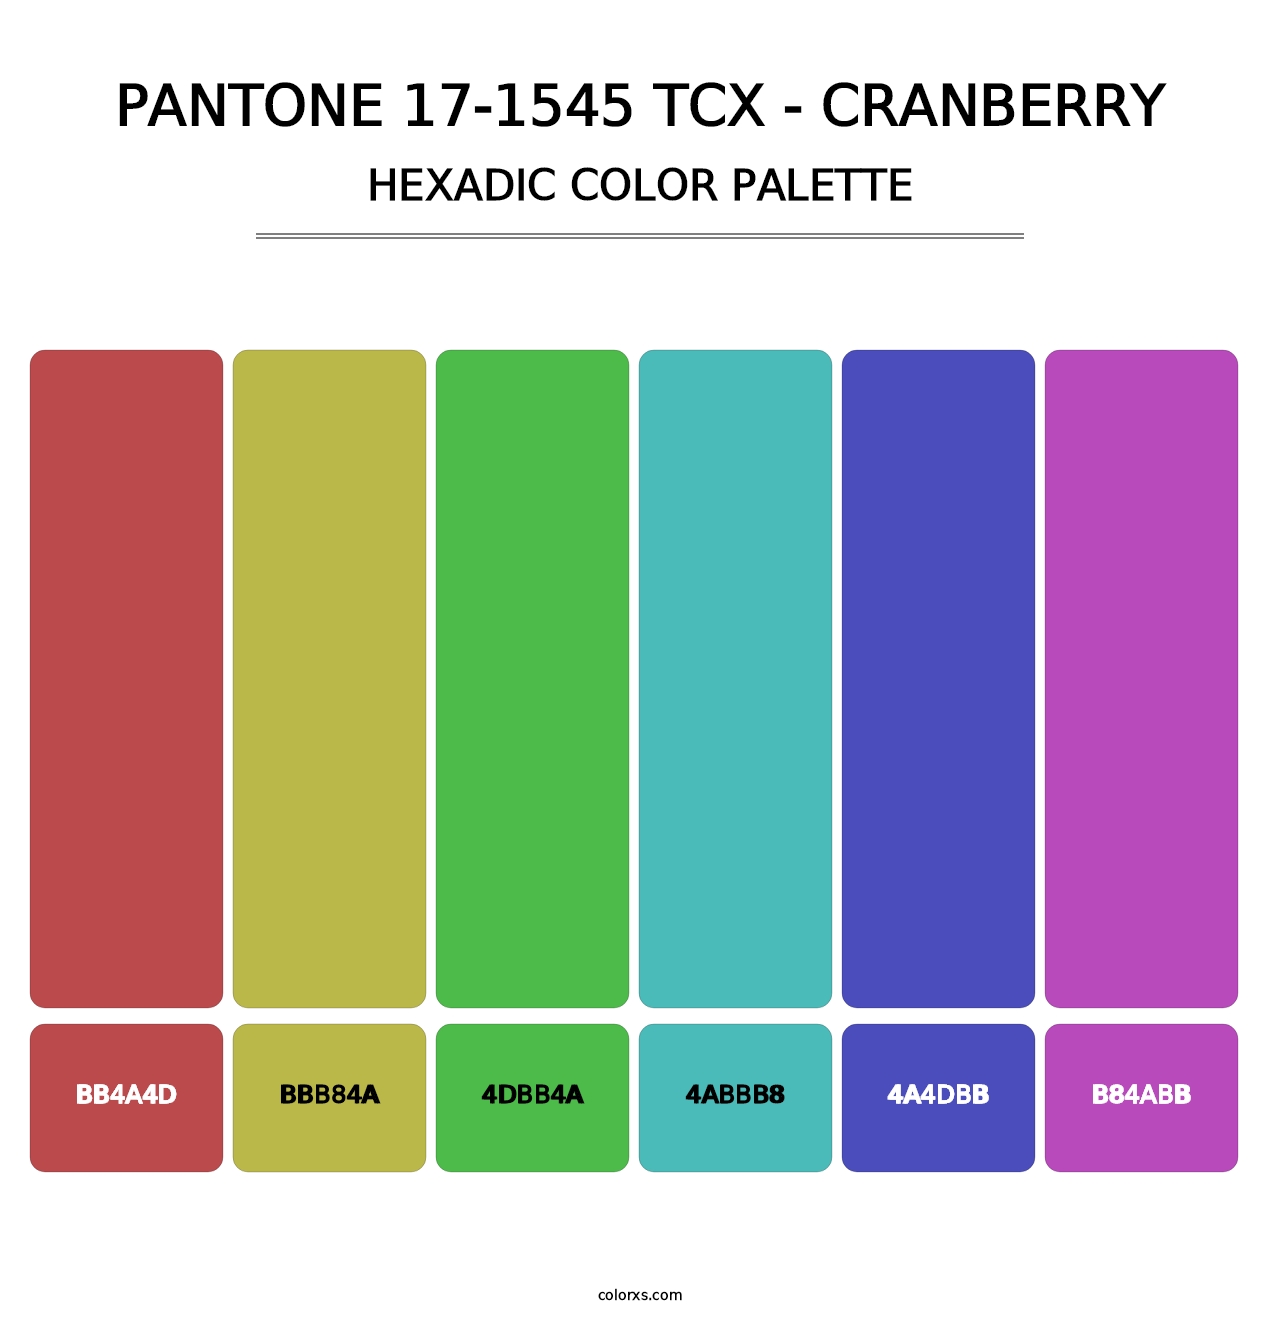 PANTONE 17-1545 TCX - Cranberry - Hexadic Color Palette